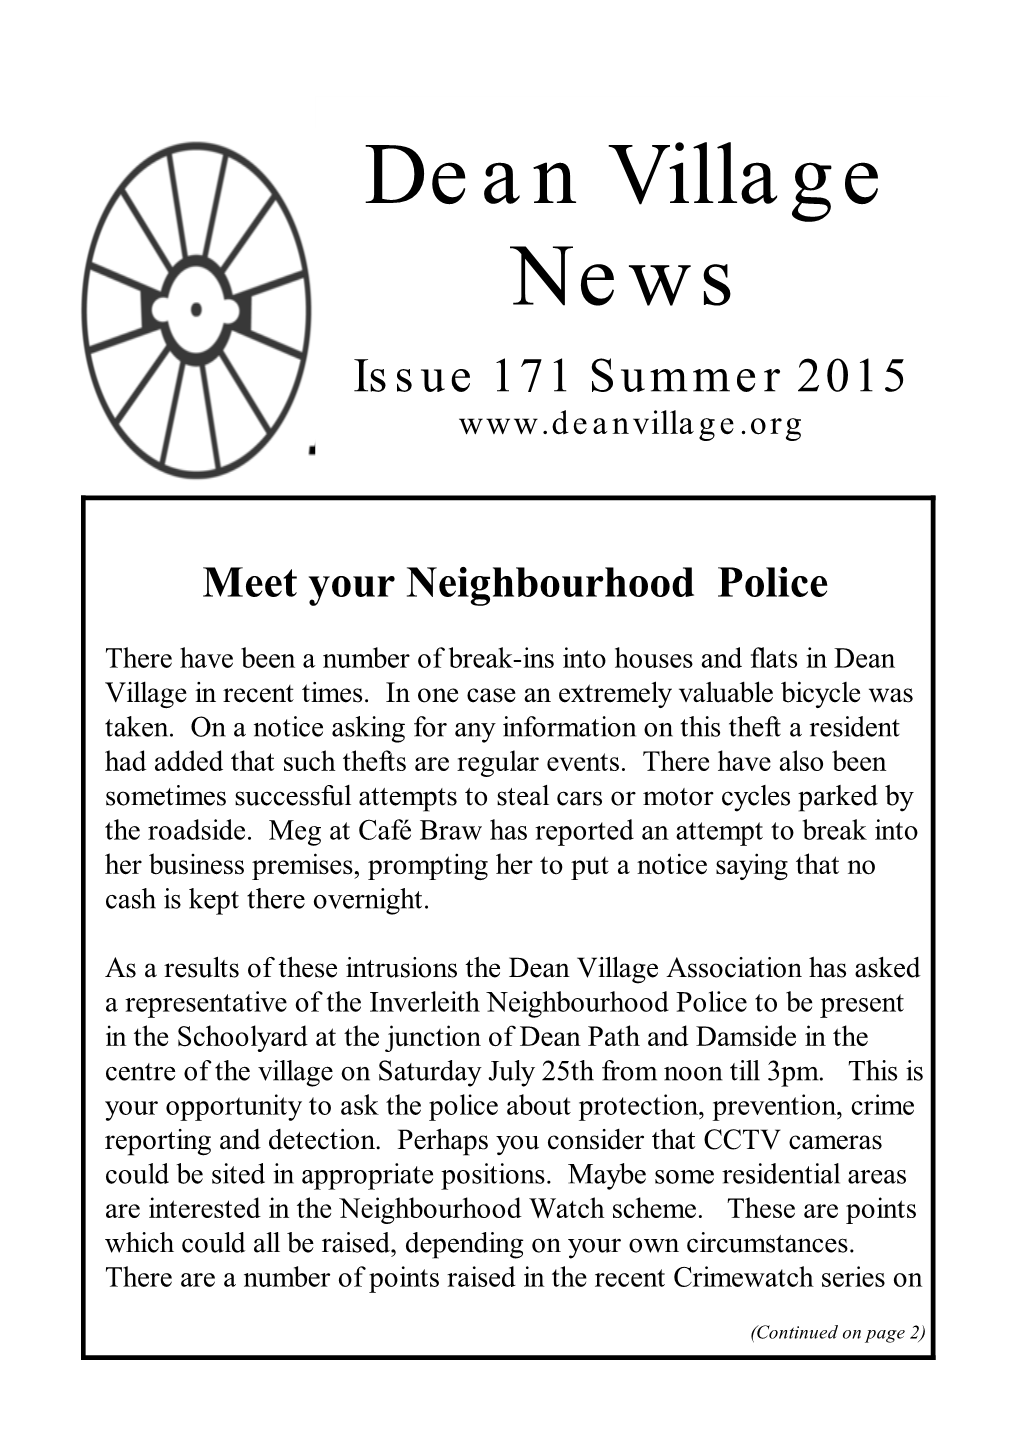 Dean Village News Issue 171 Summer 2015